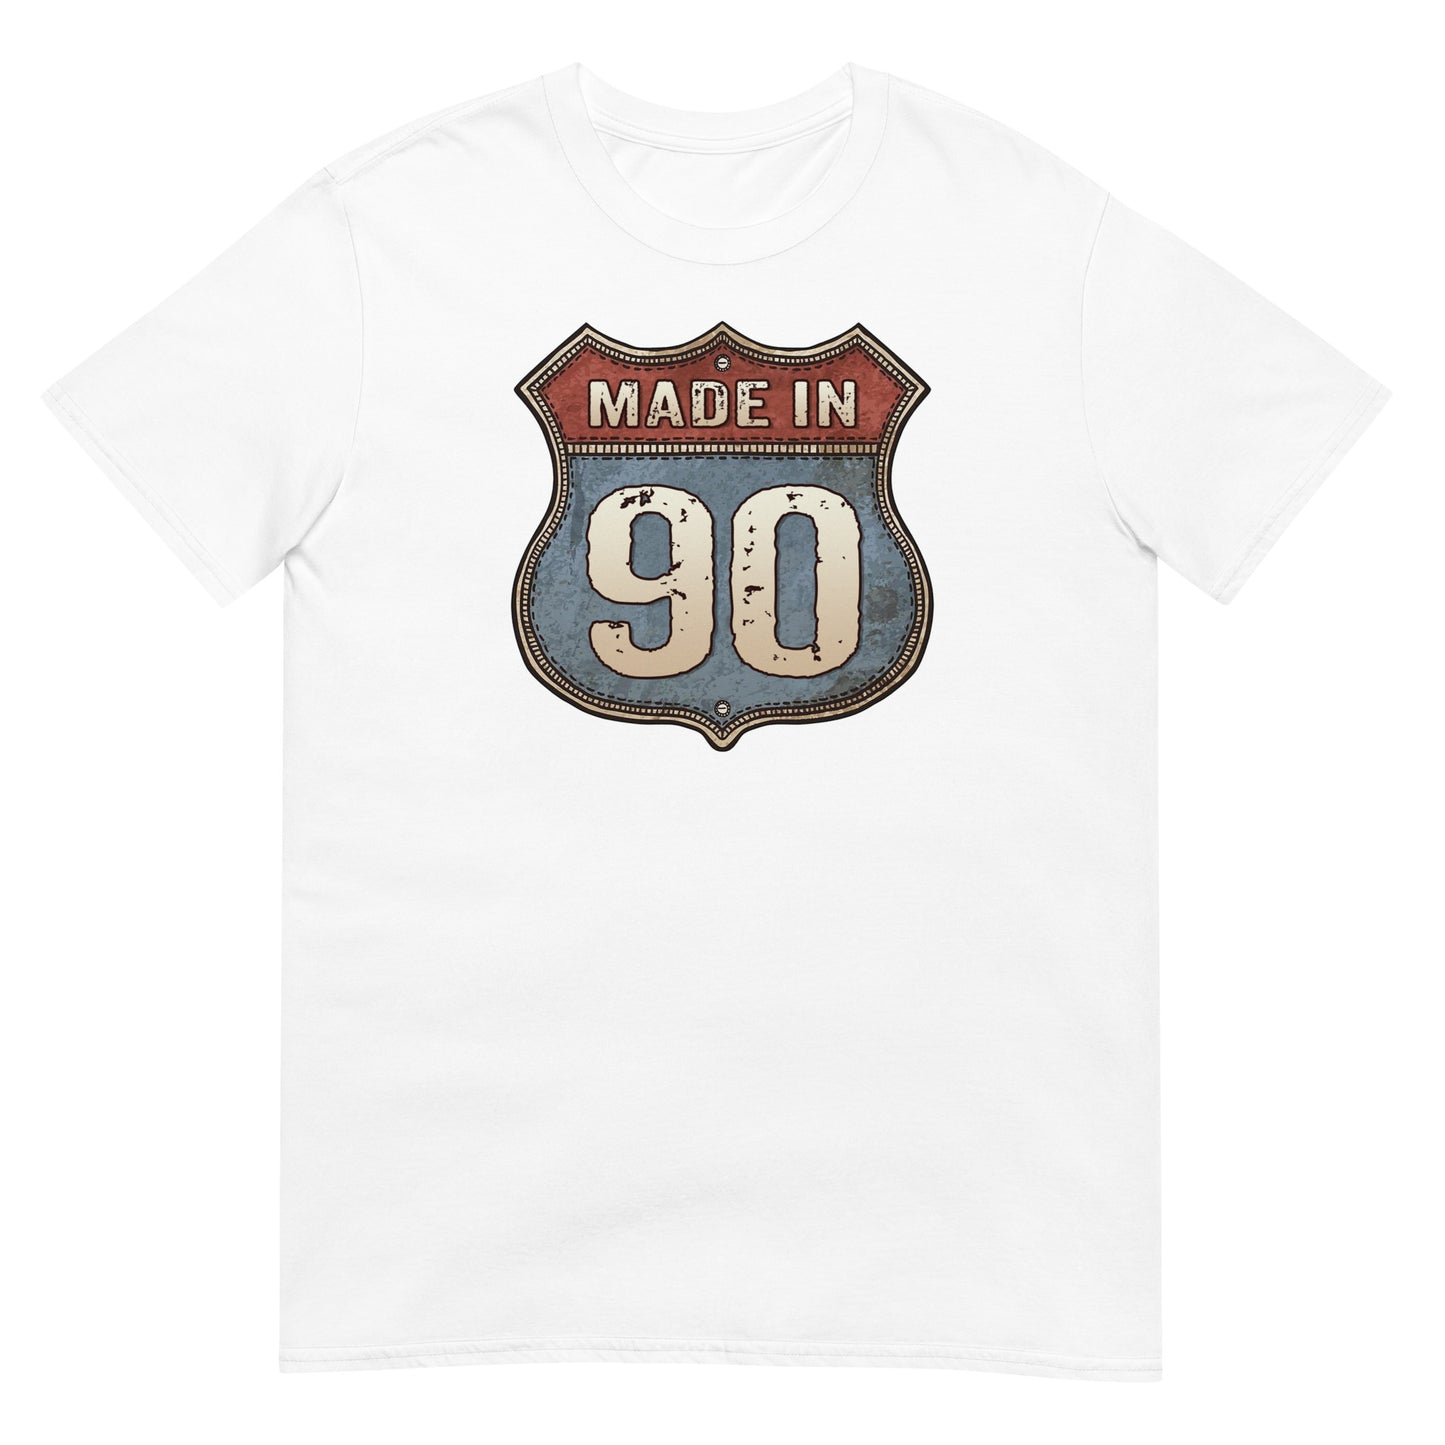 Camiseta Made In 90 - Cumpleaños